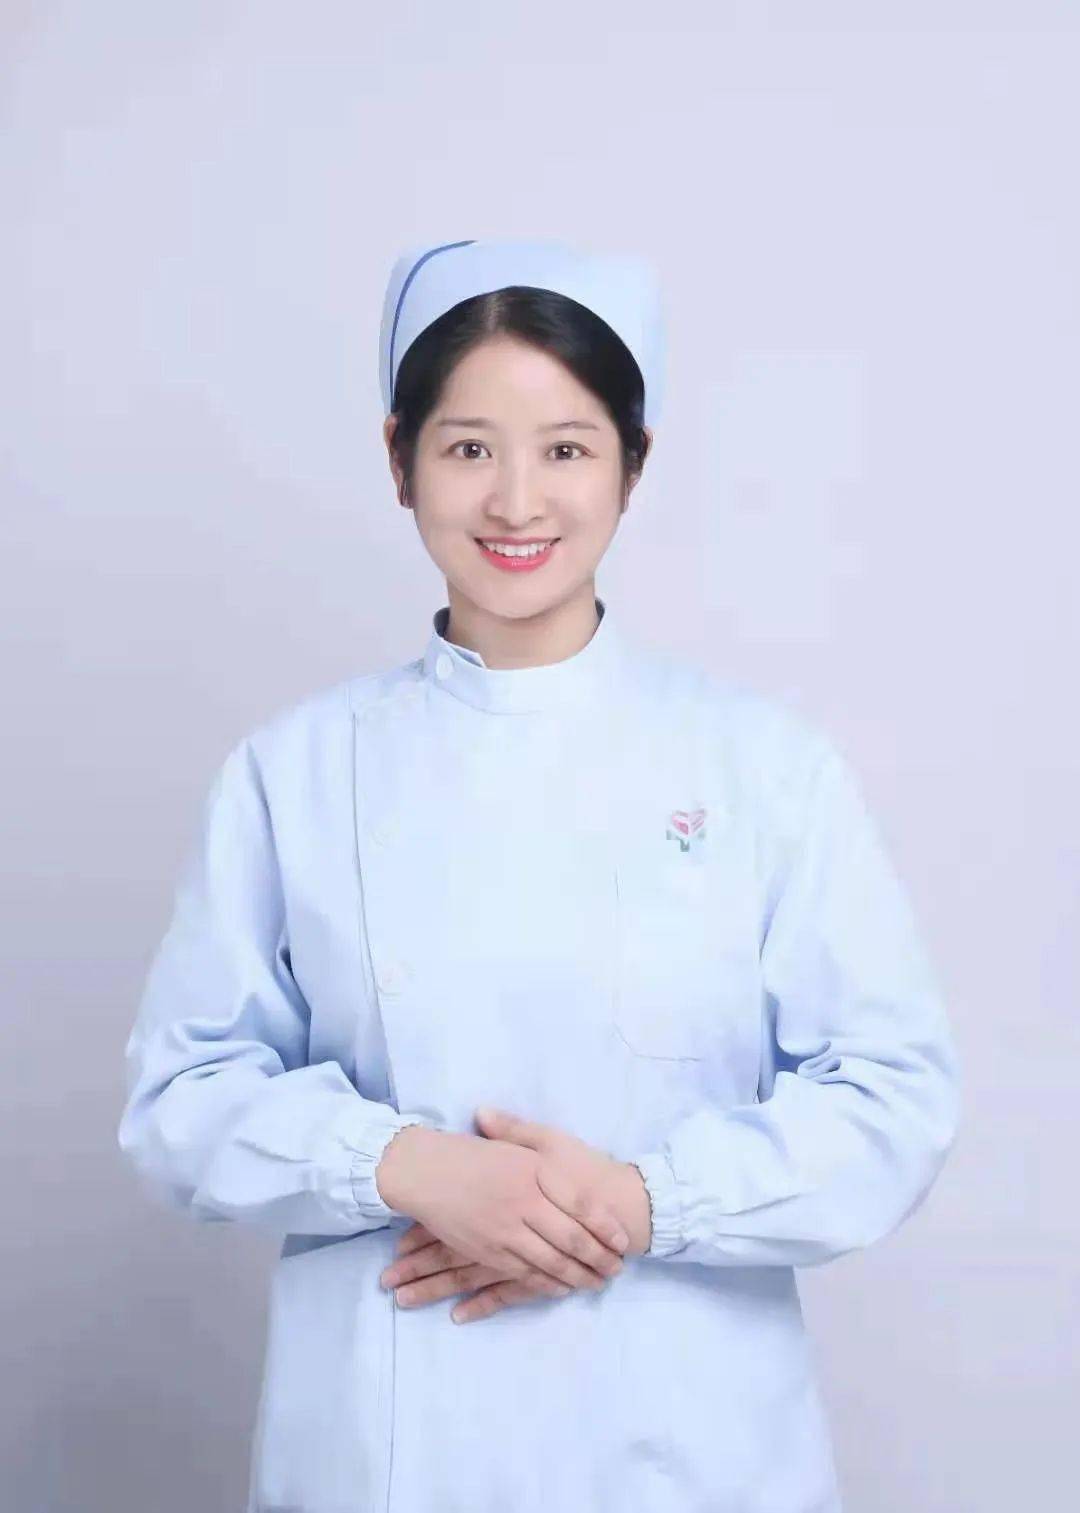 致敬512护士节:池州二院方思菊以一身白衣,守一隅健康